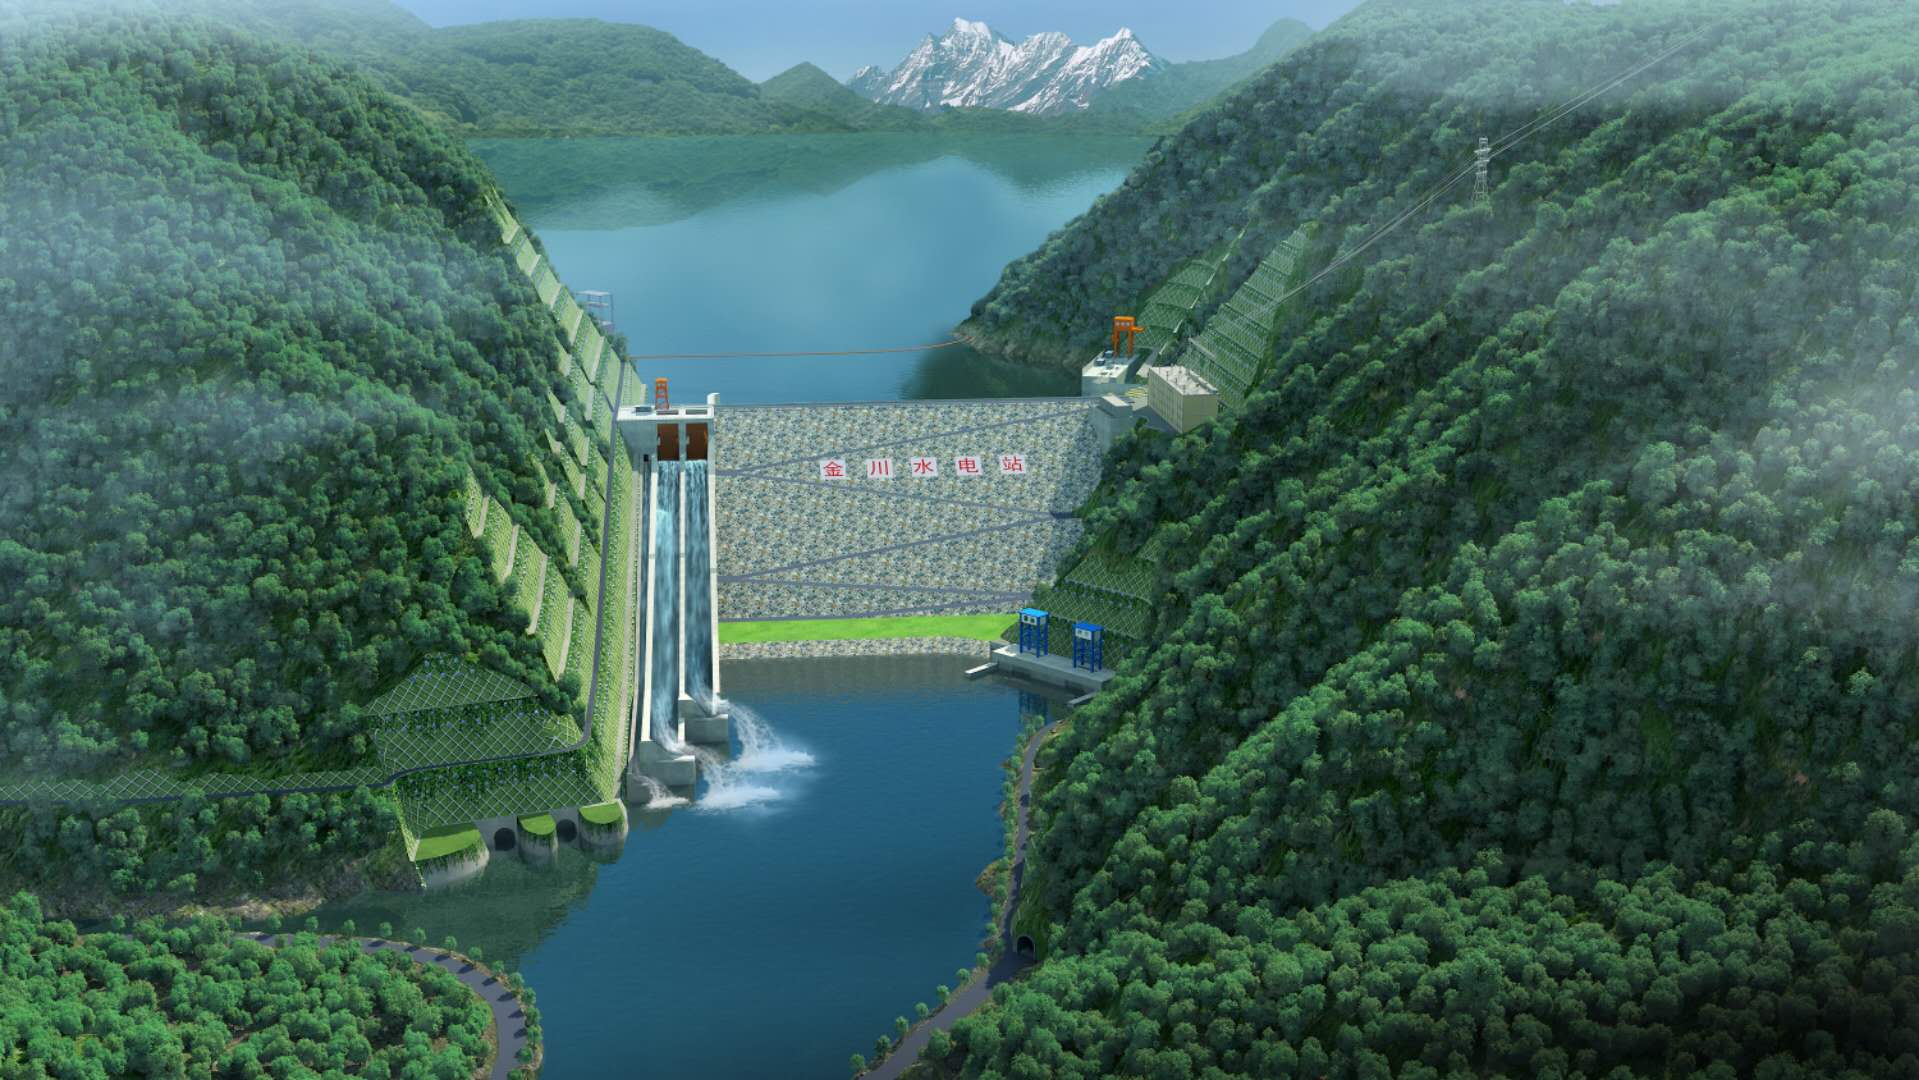 大渡河金川水电站建设工程有序推进:计划2021年河道截流、2024年首台机组发电